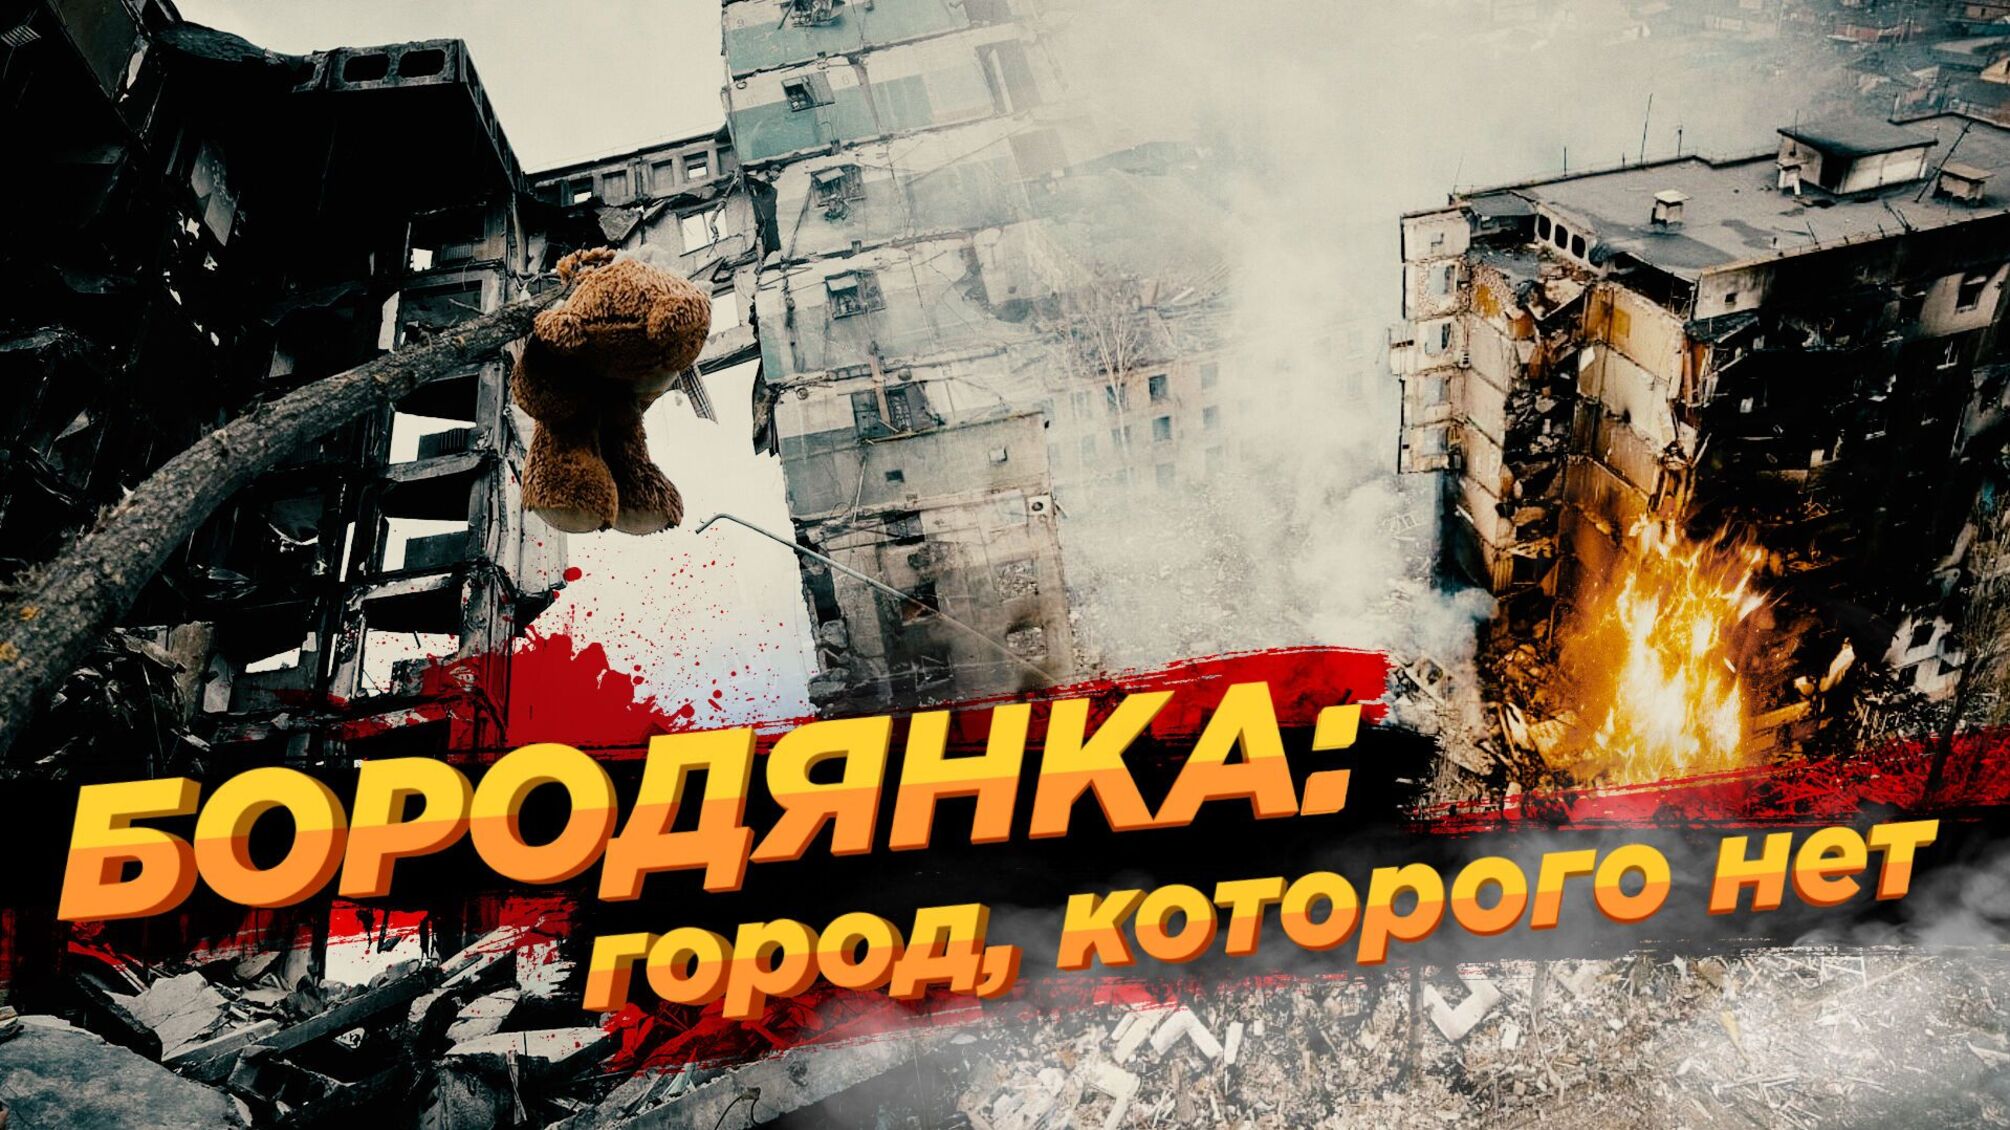 Руины Бородянки: Бочкала презентует фильм об искалеченном россиянами городе